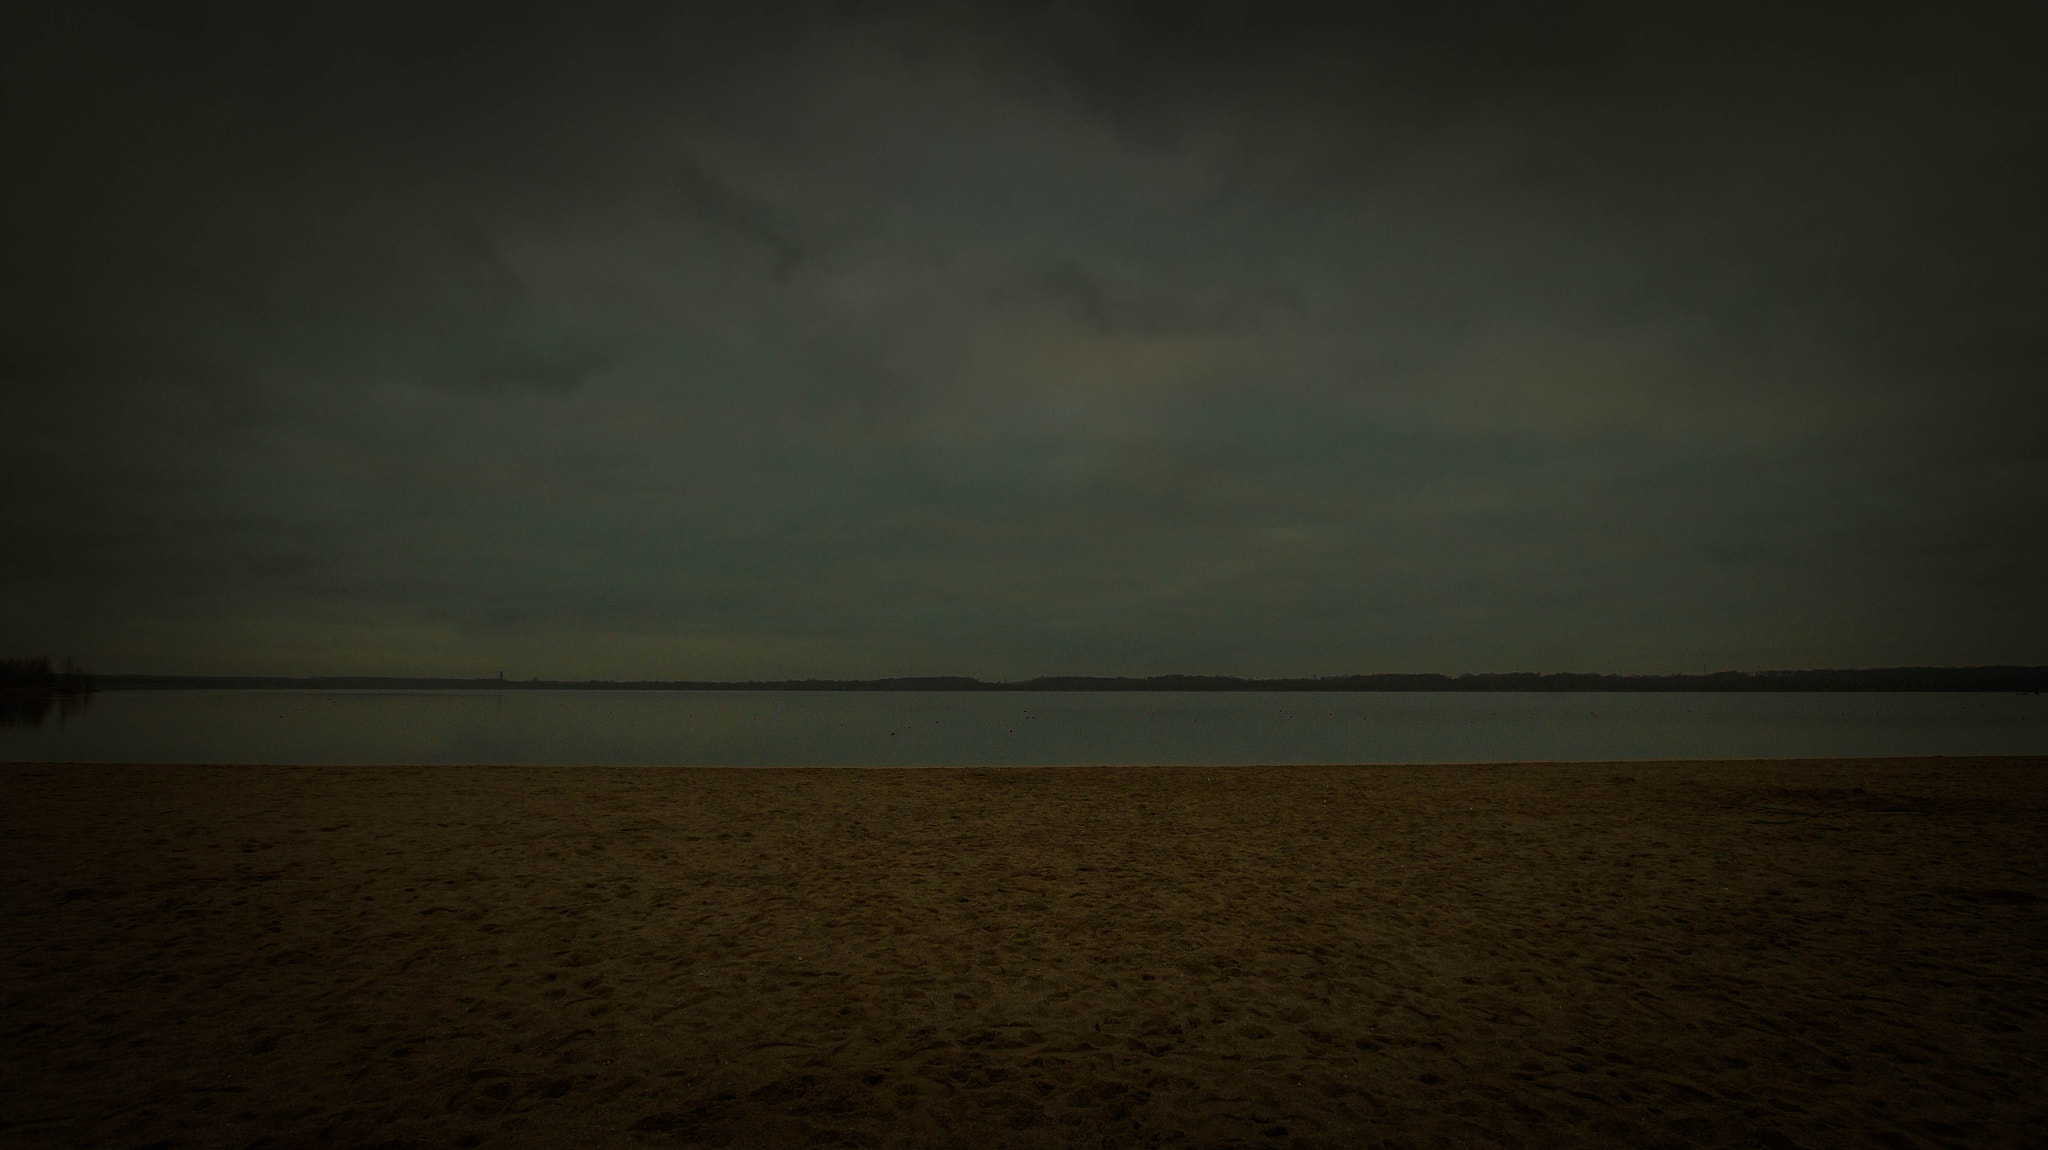 Sony SLT-A58 sample photo. Winter on a beach photography